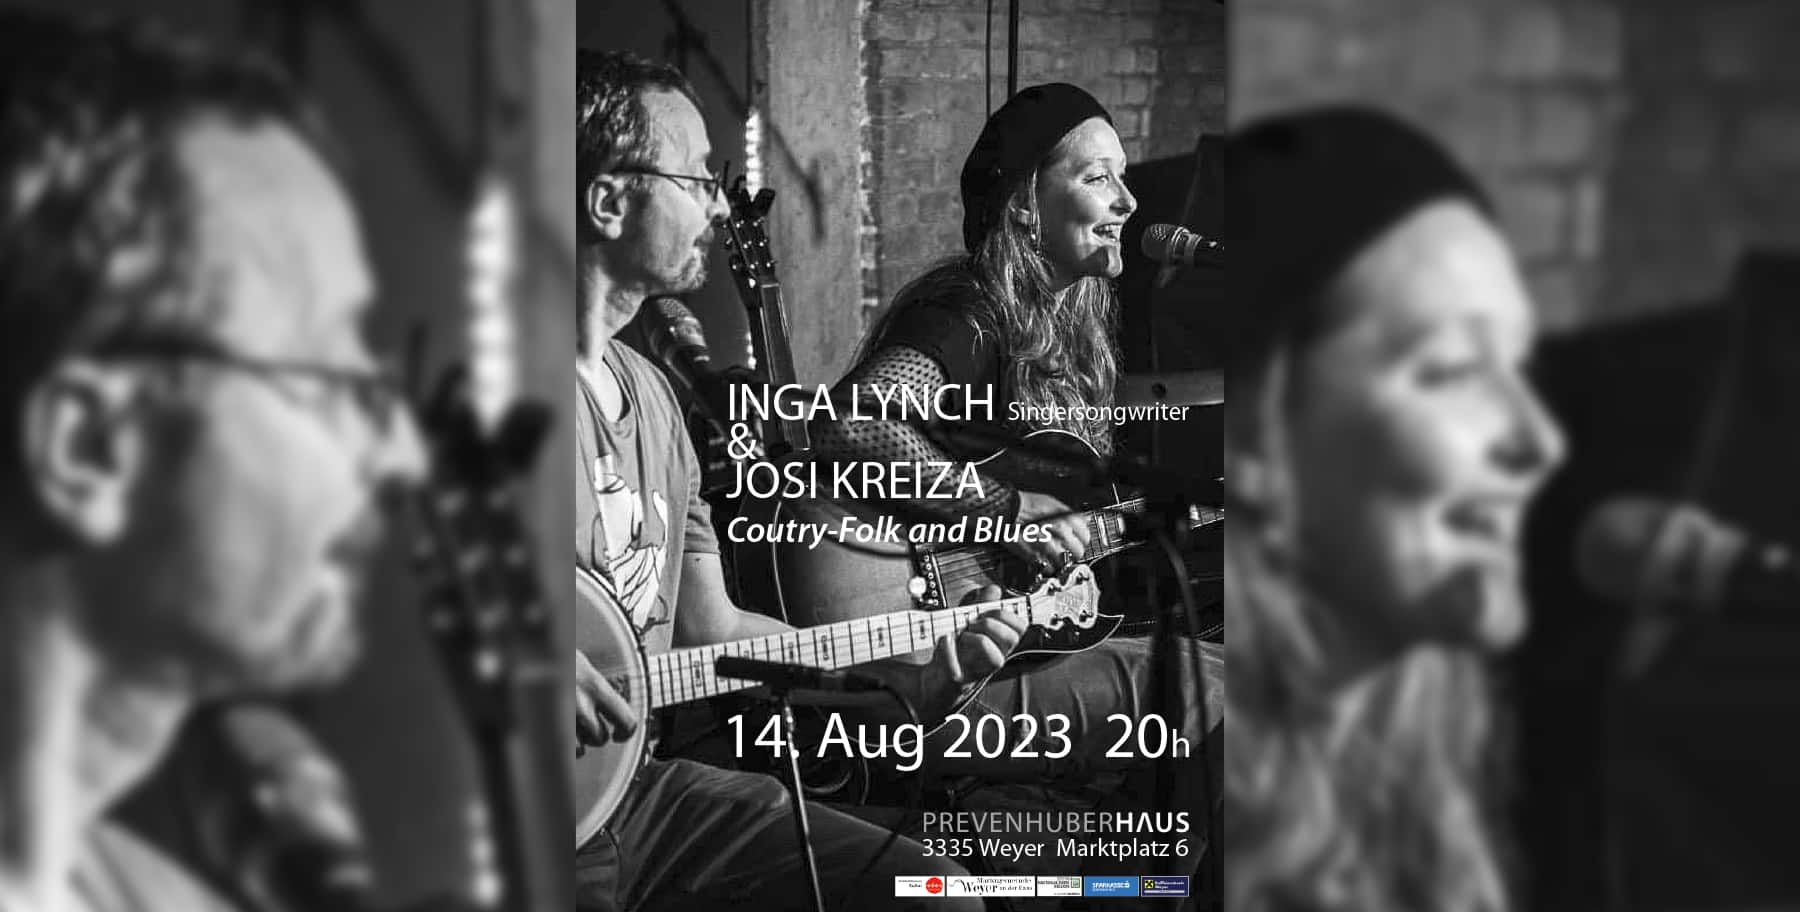 Konzert | Singersongwriter Inga Lynch und Josi Kreiza spielen Coutry-Folk und Blues